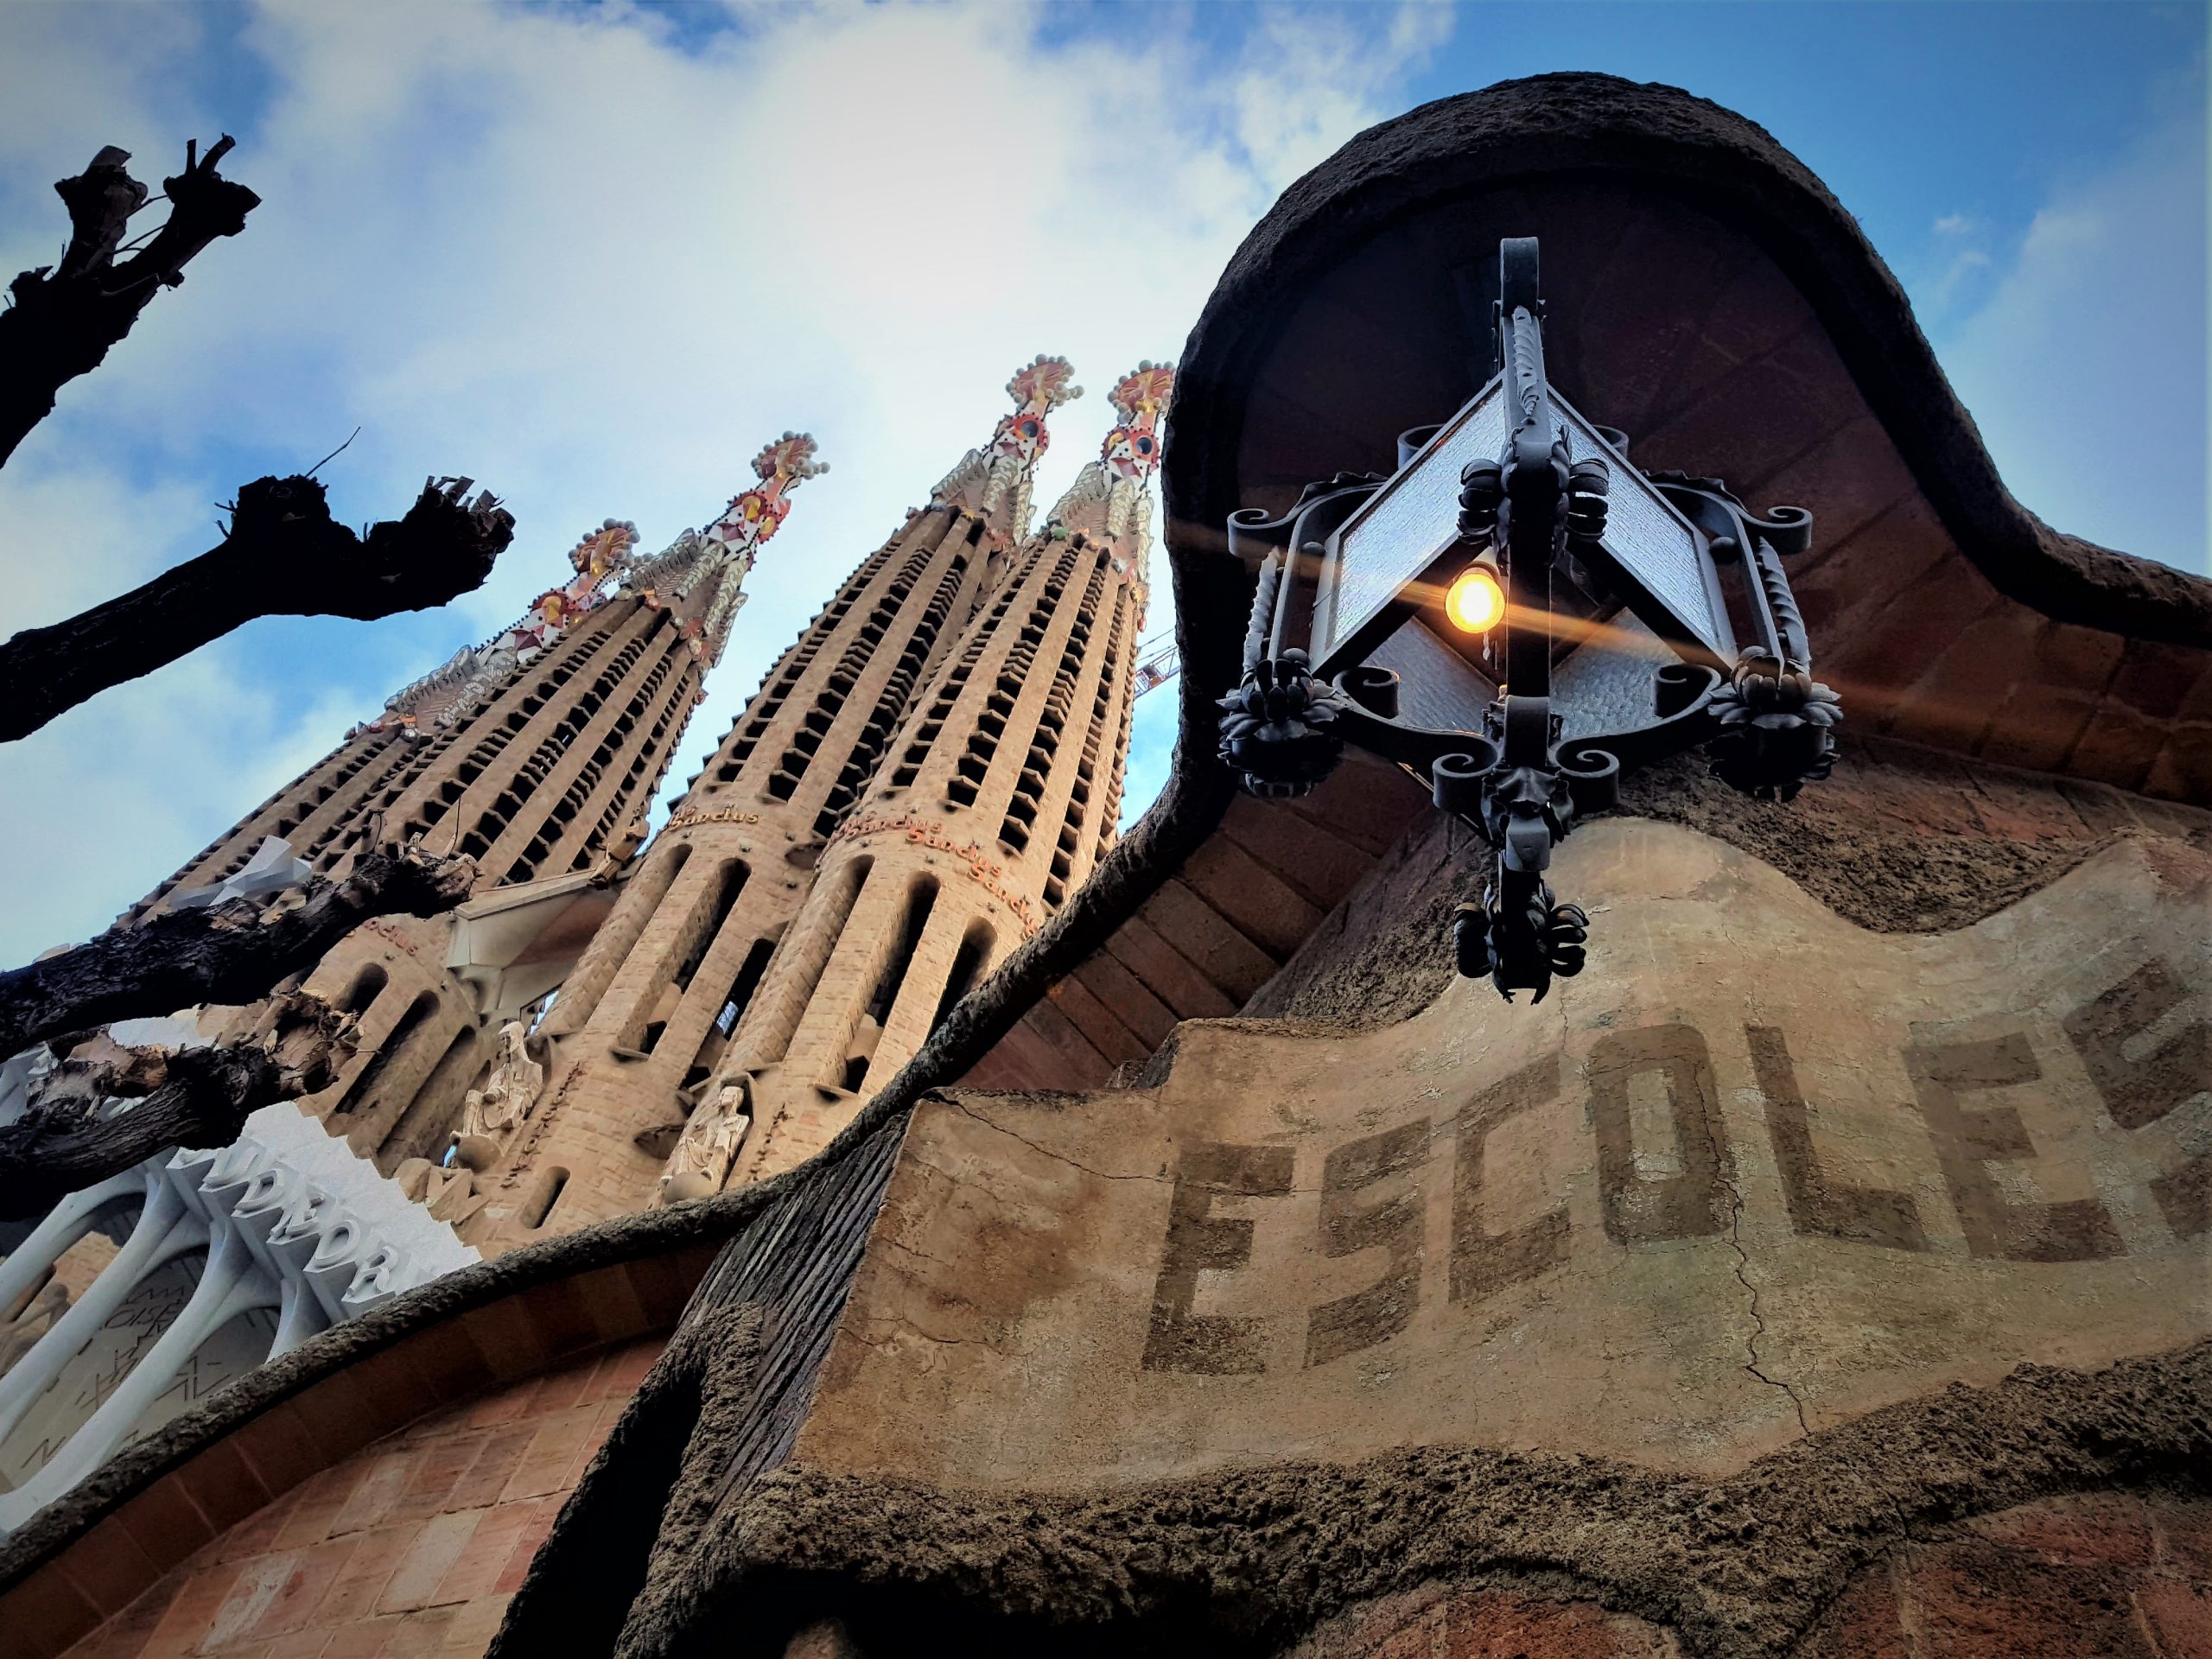 Entrada a la Sagrada familia, torres y escuela. Visita guiada en español. Barcelona